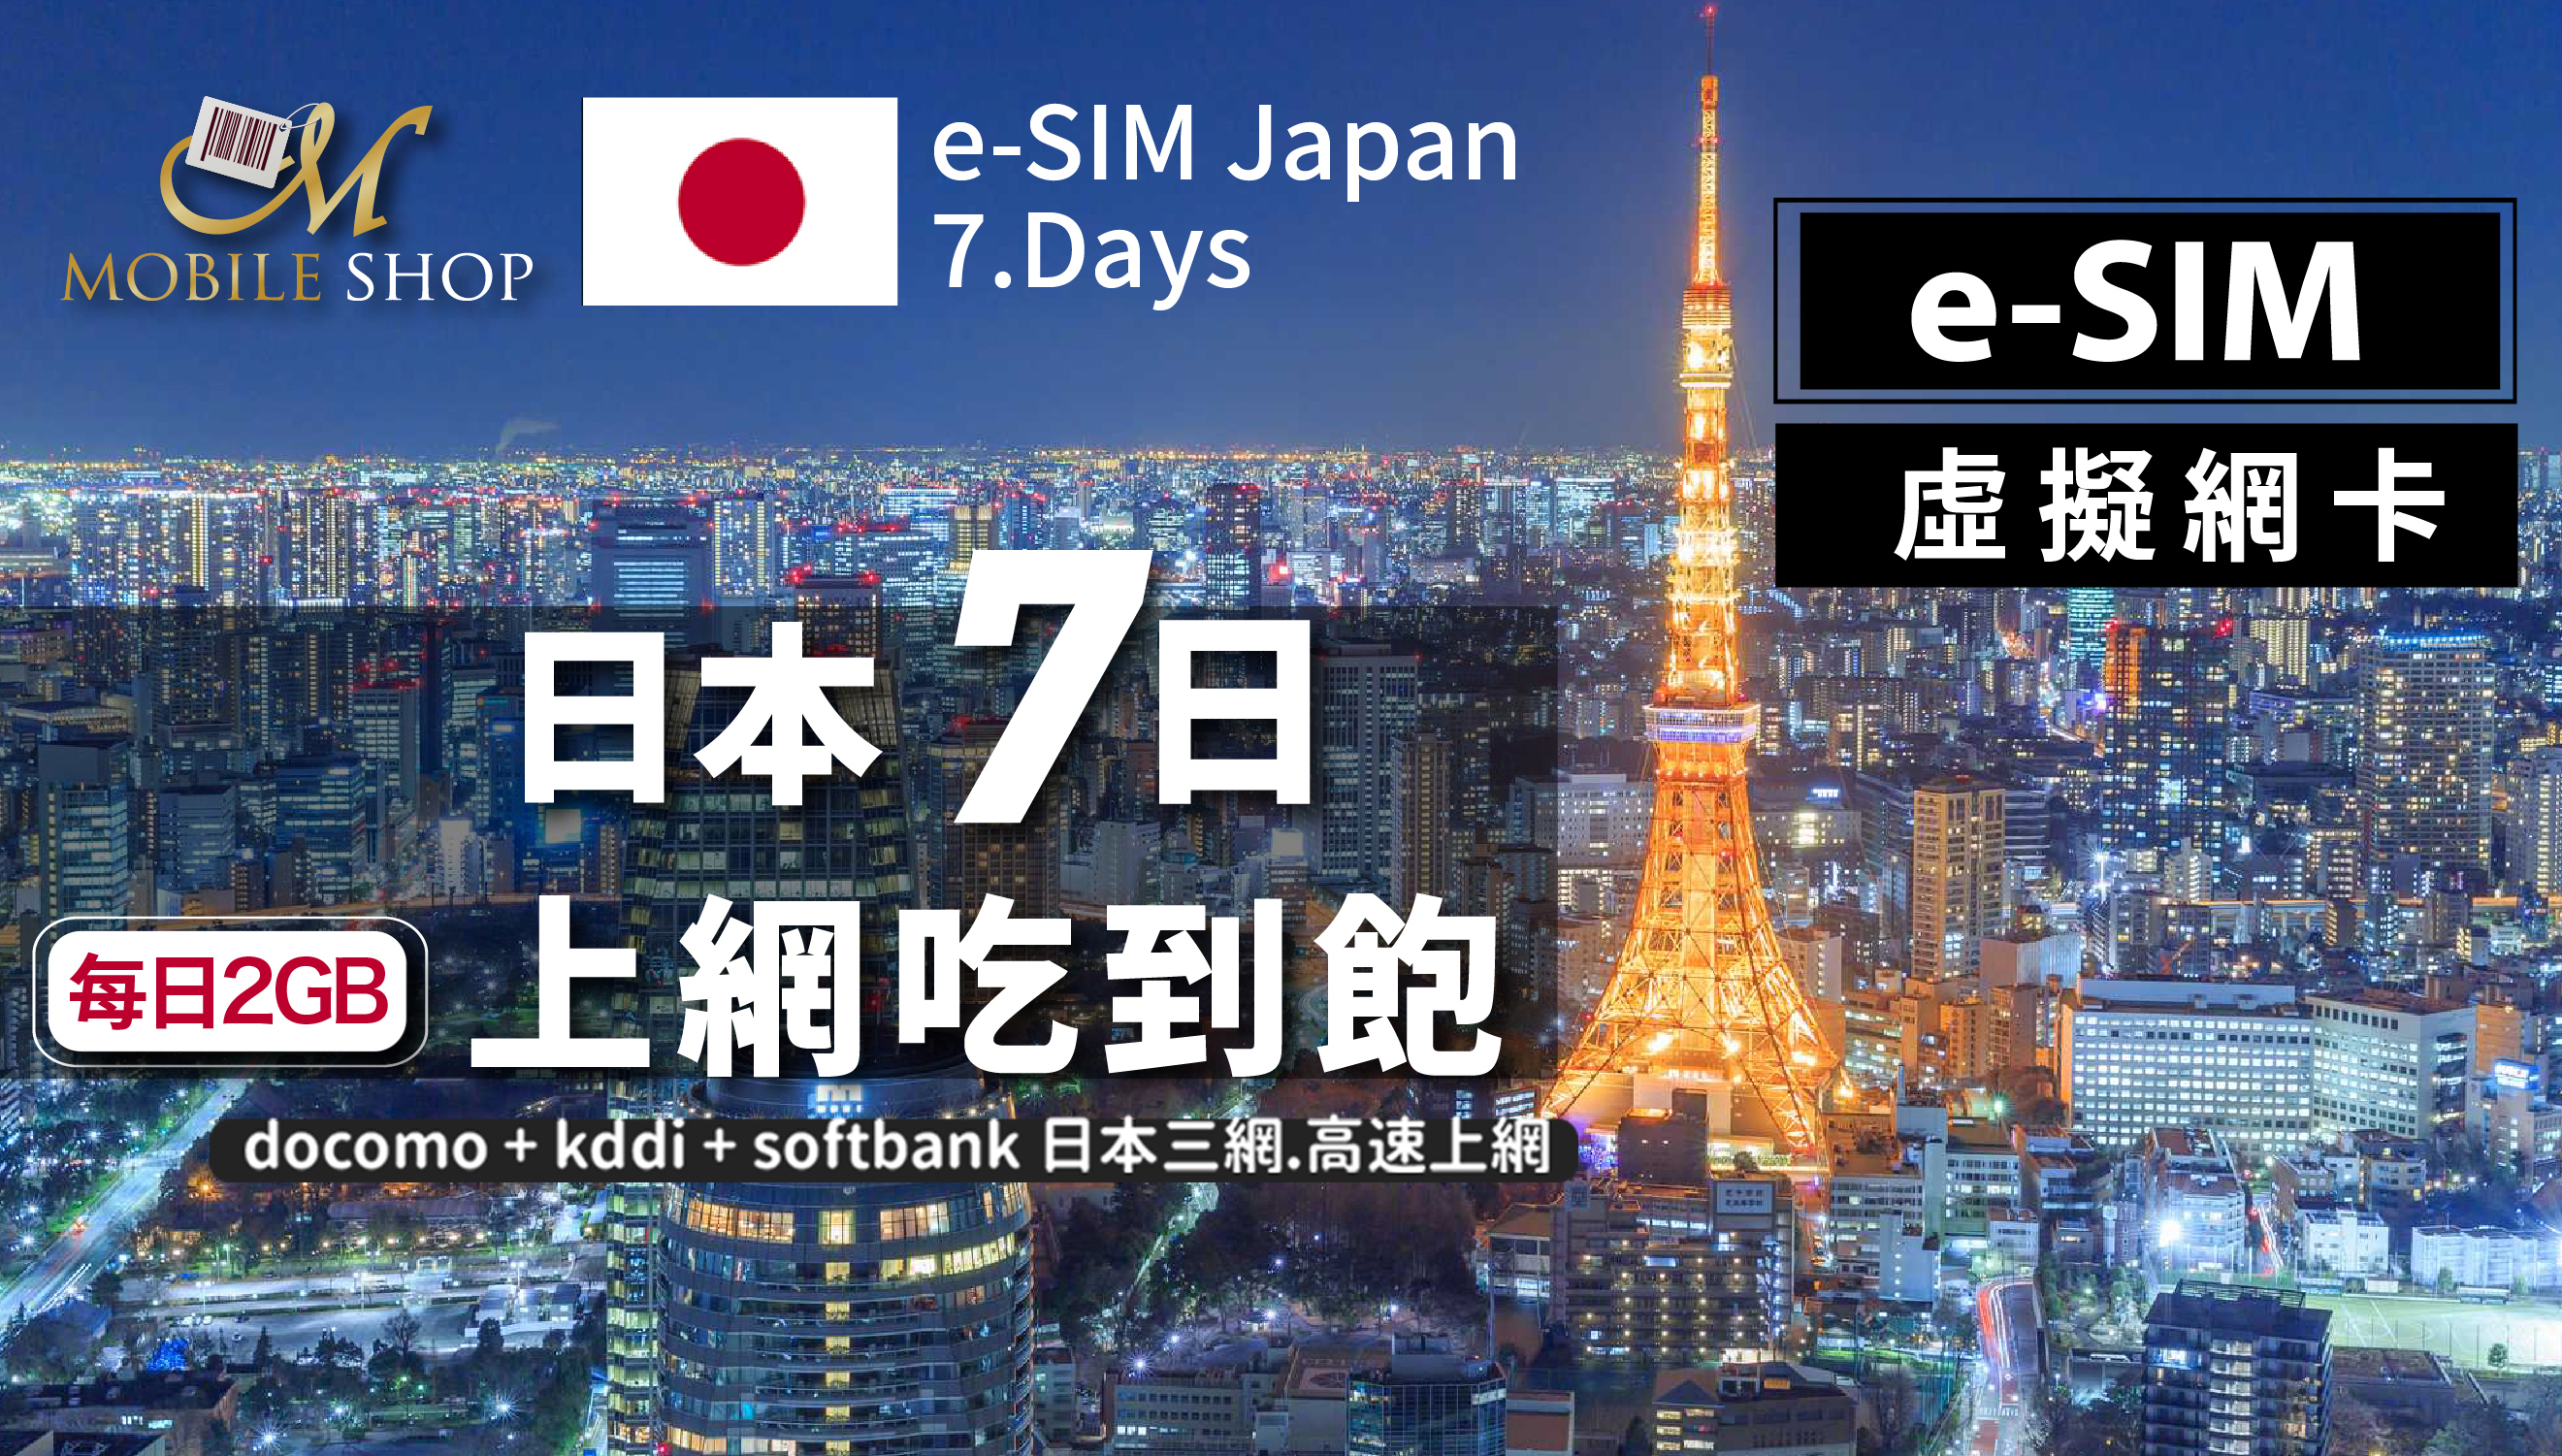 eSIM Japan 7days/2GB day unlimited data